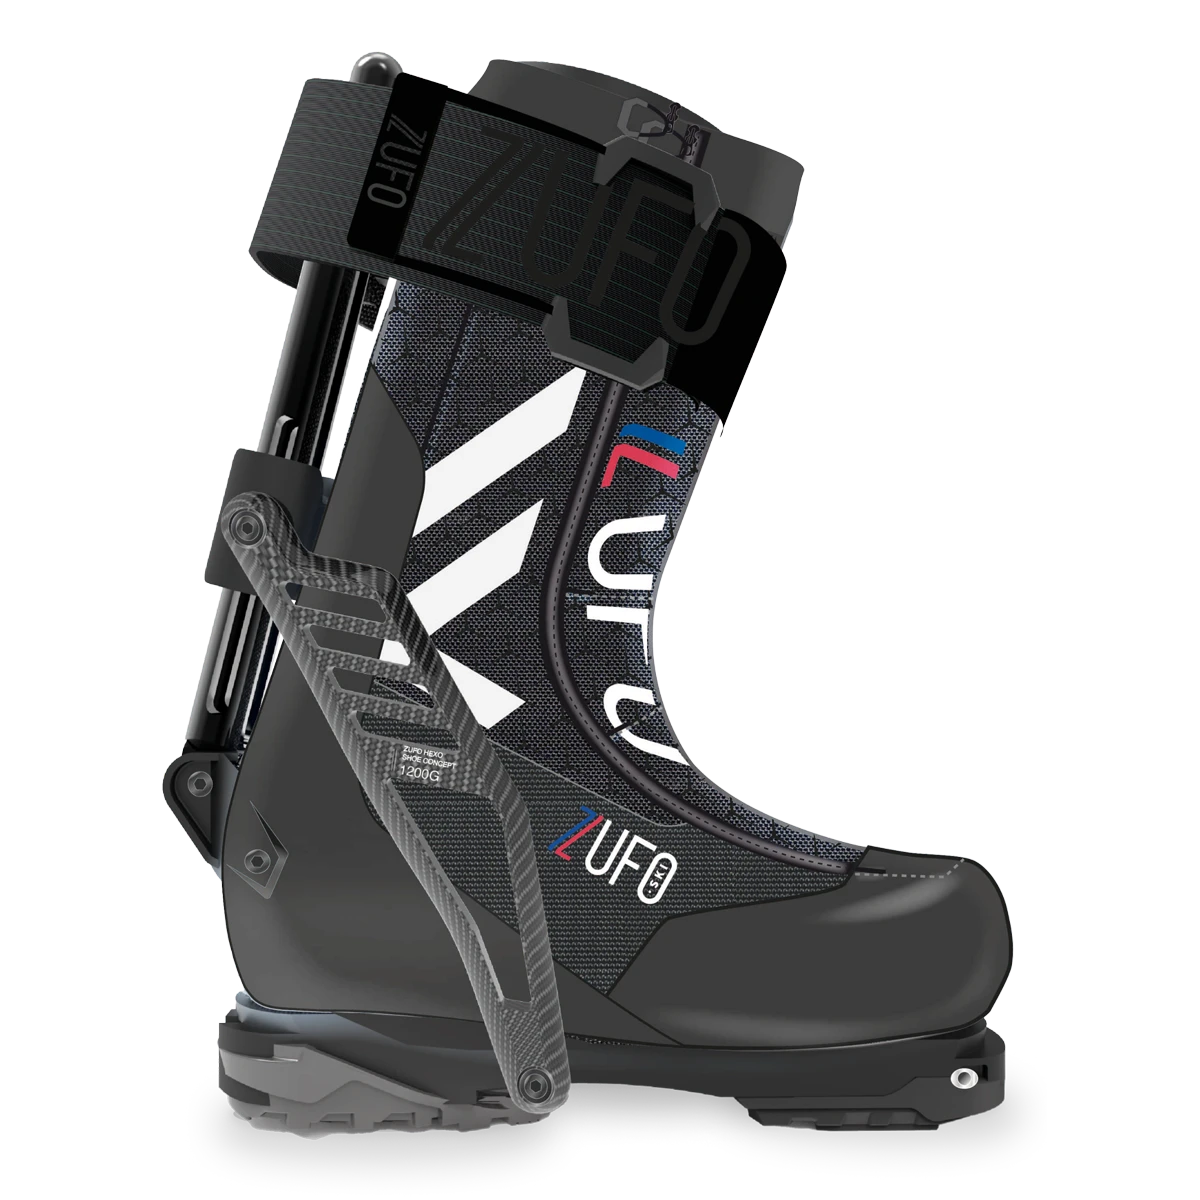 Visuel de la chaussure de ski zUFO, première chaussure qui utilise un système d'exosquelette